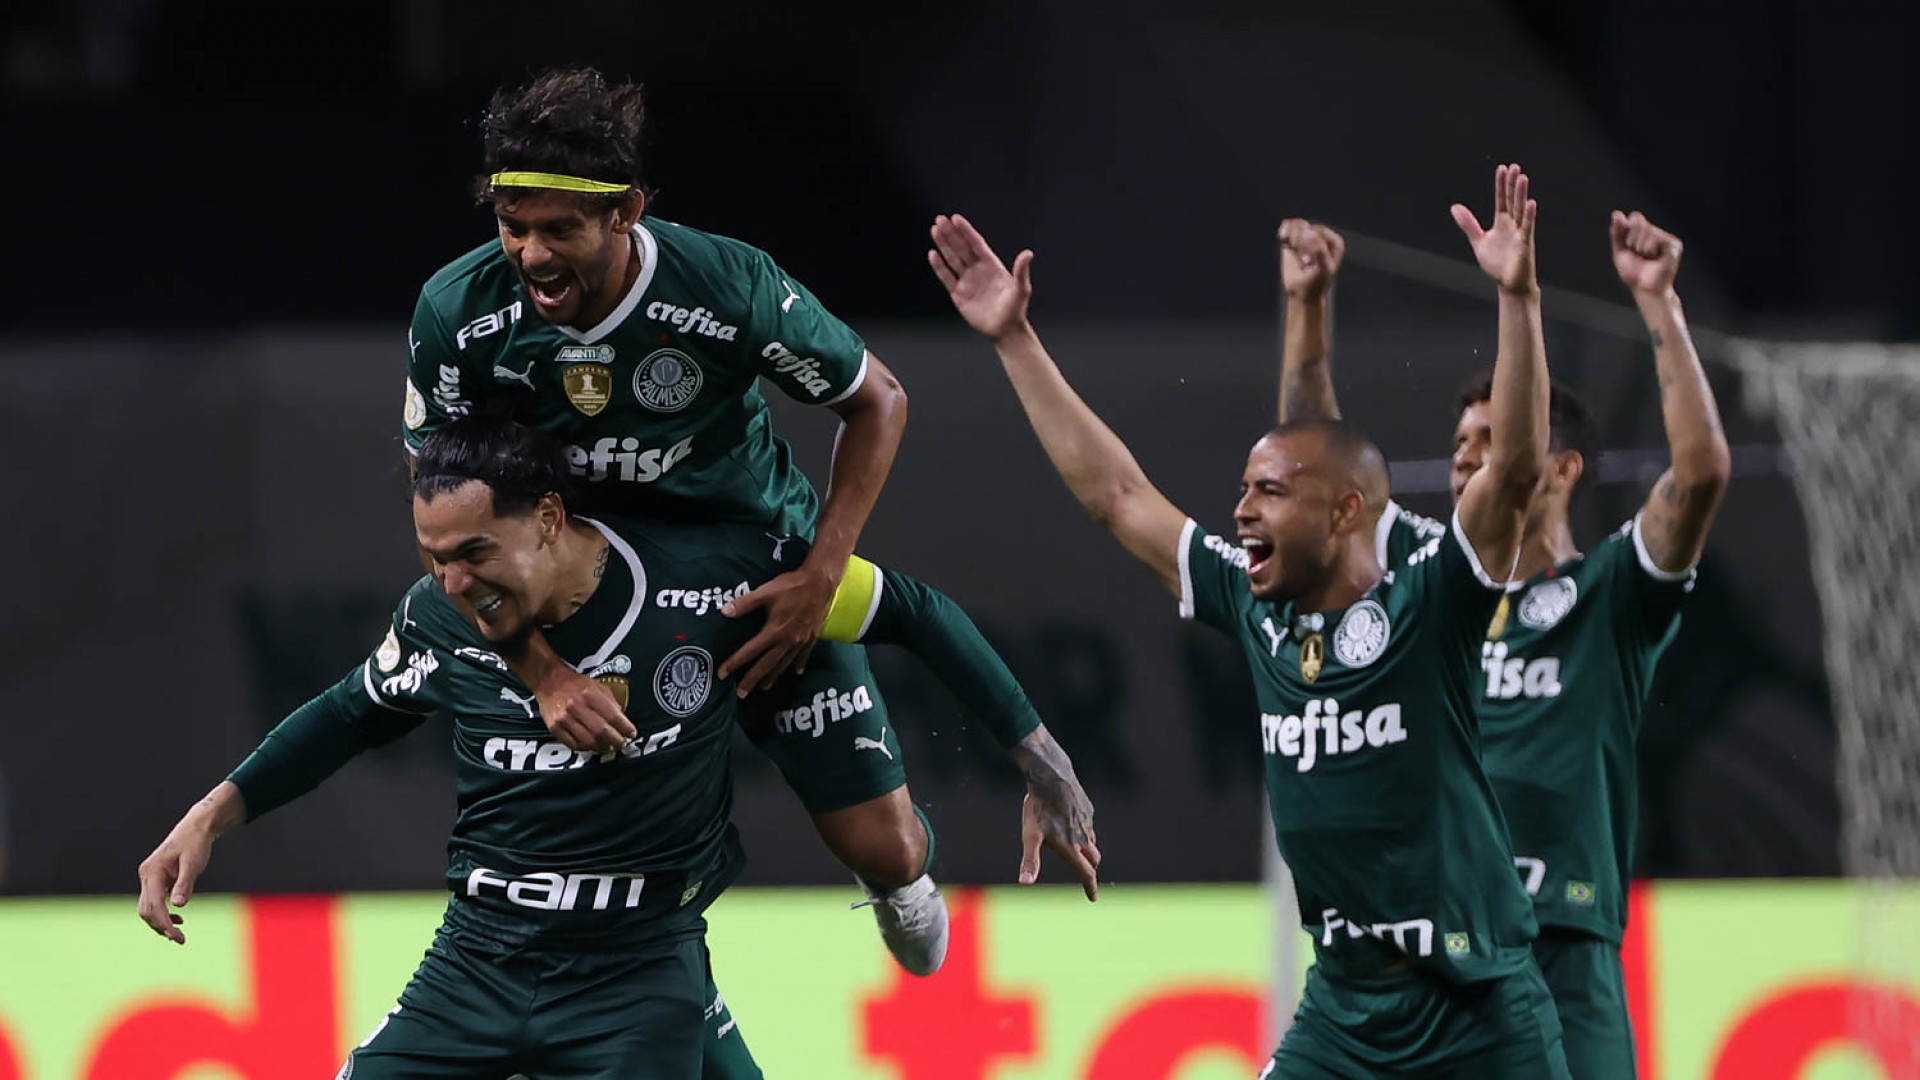 Brasileirão: Palmeiras é campeão pela 11ª vez - 02/11/2022